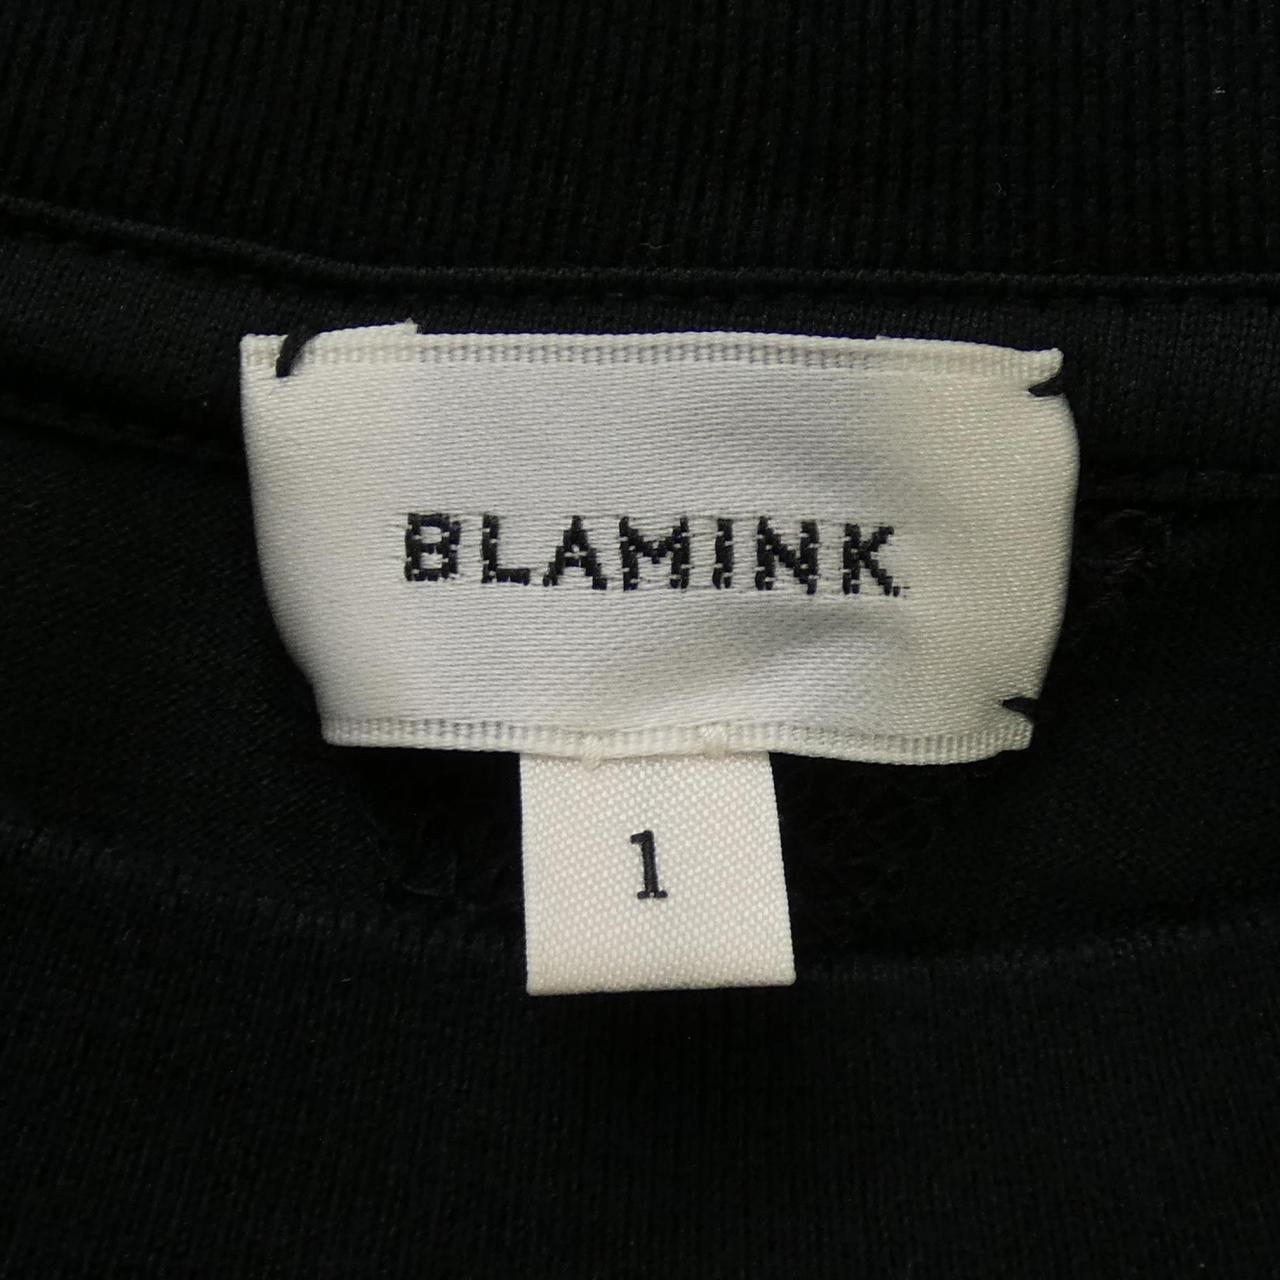 BLAMINK tops